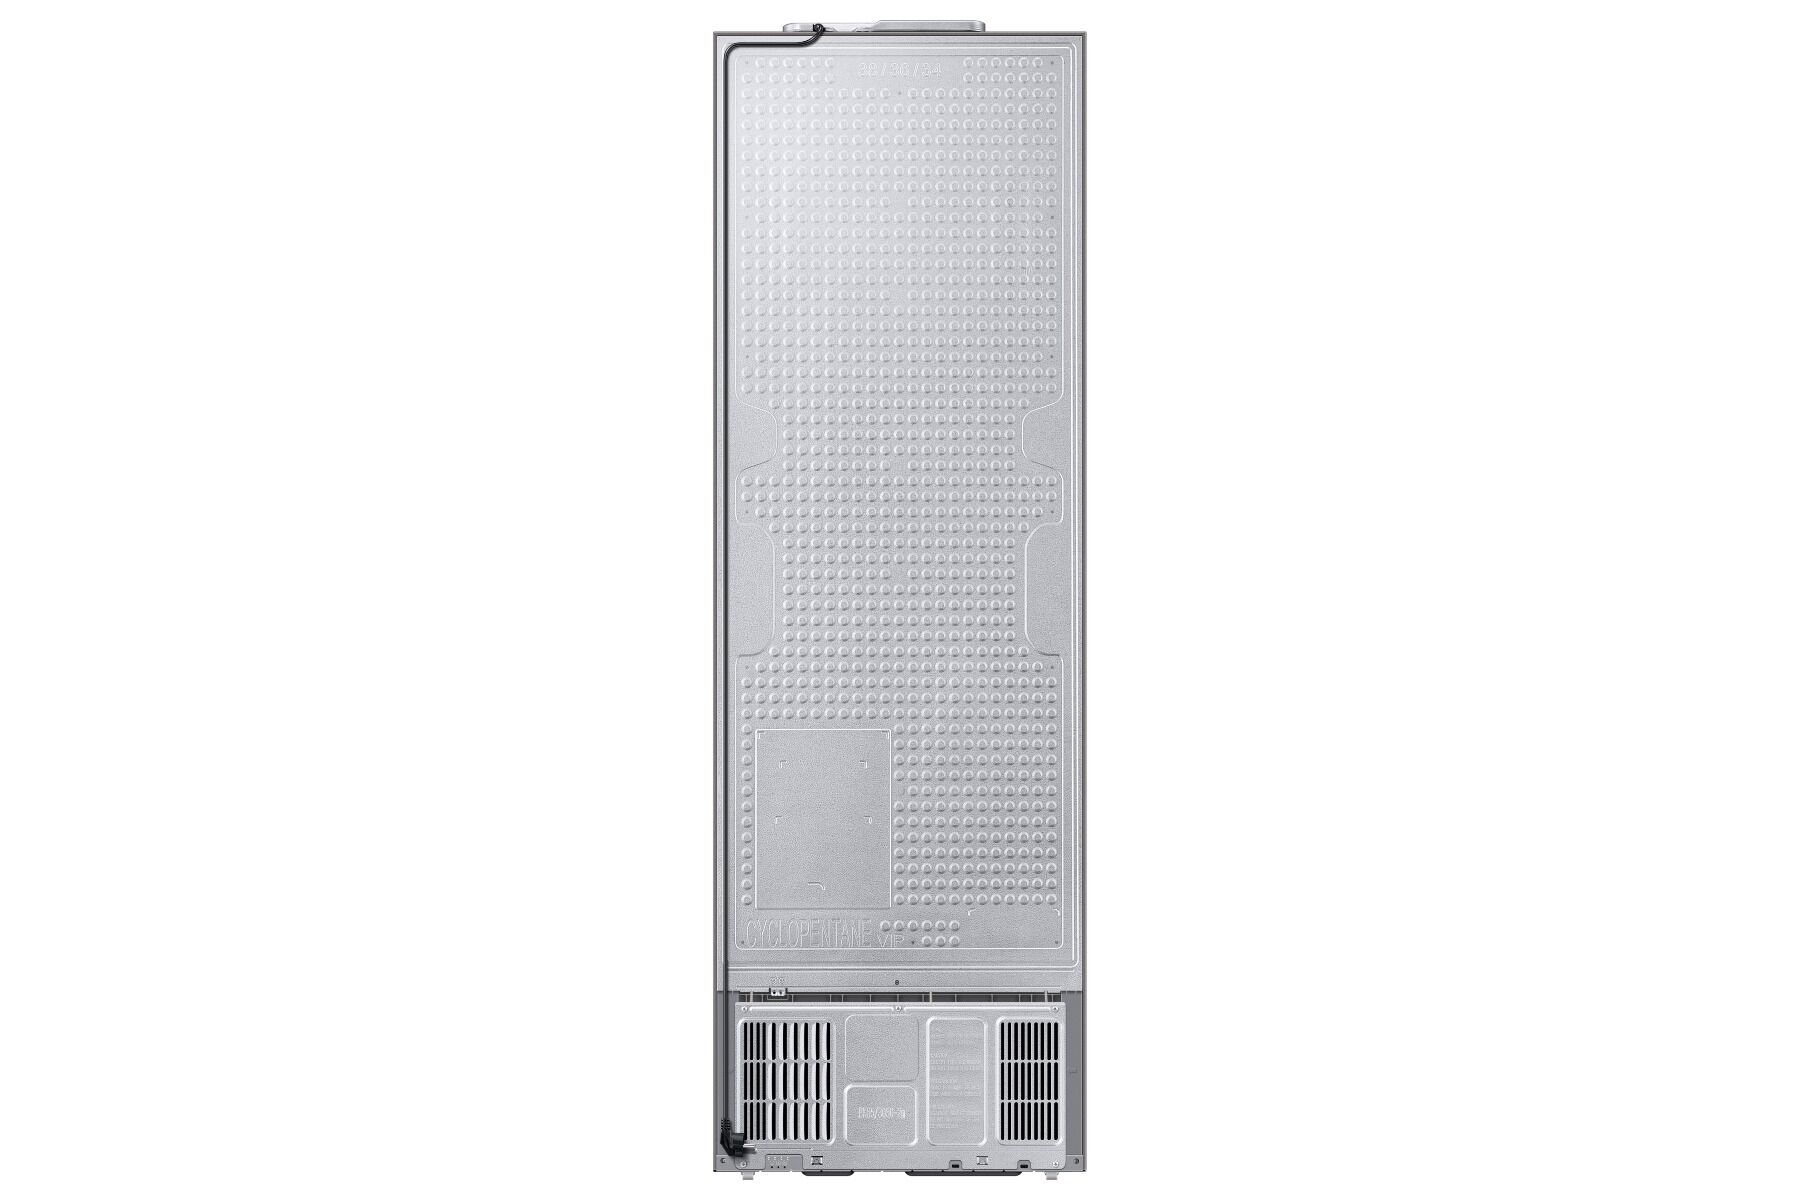 Combina frigorifica Samsung RB34T670ESA, 340 Litri, H 185cm, Clasa E, Inox, No Frost